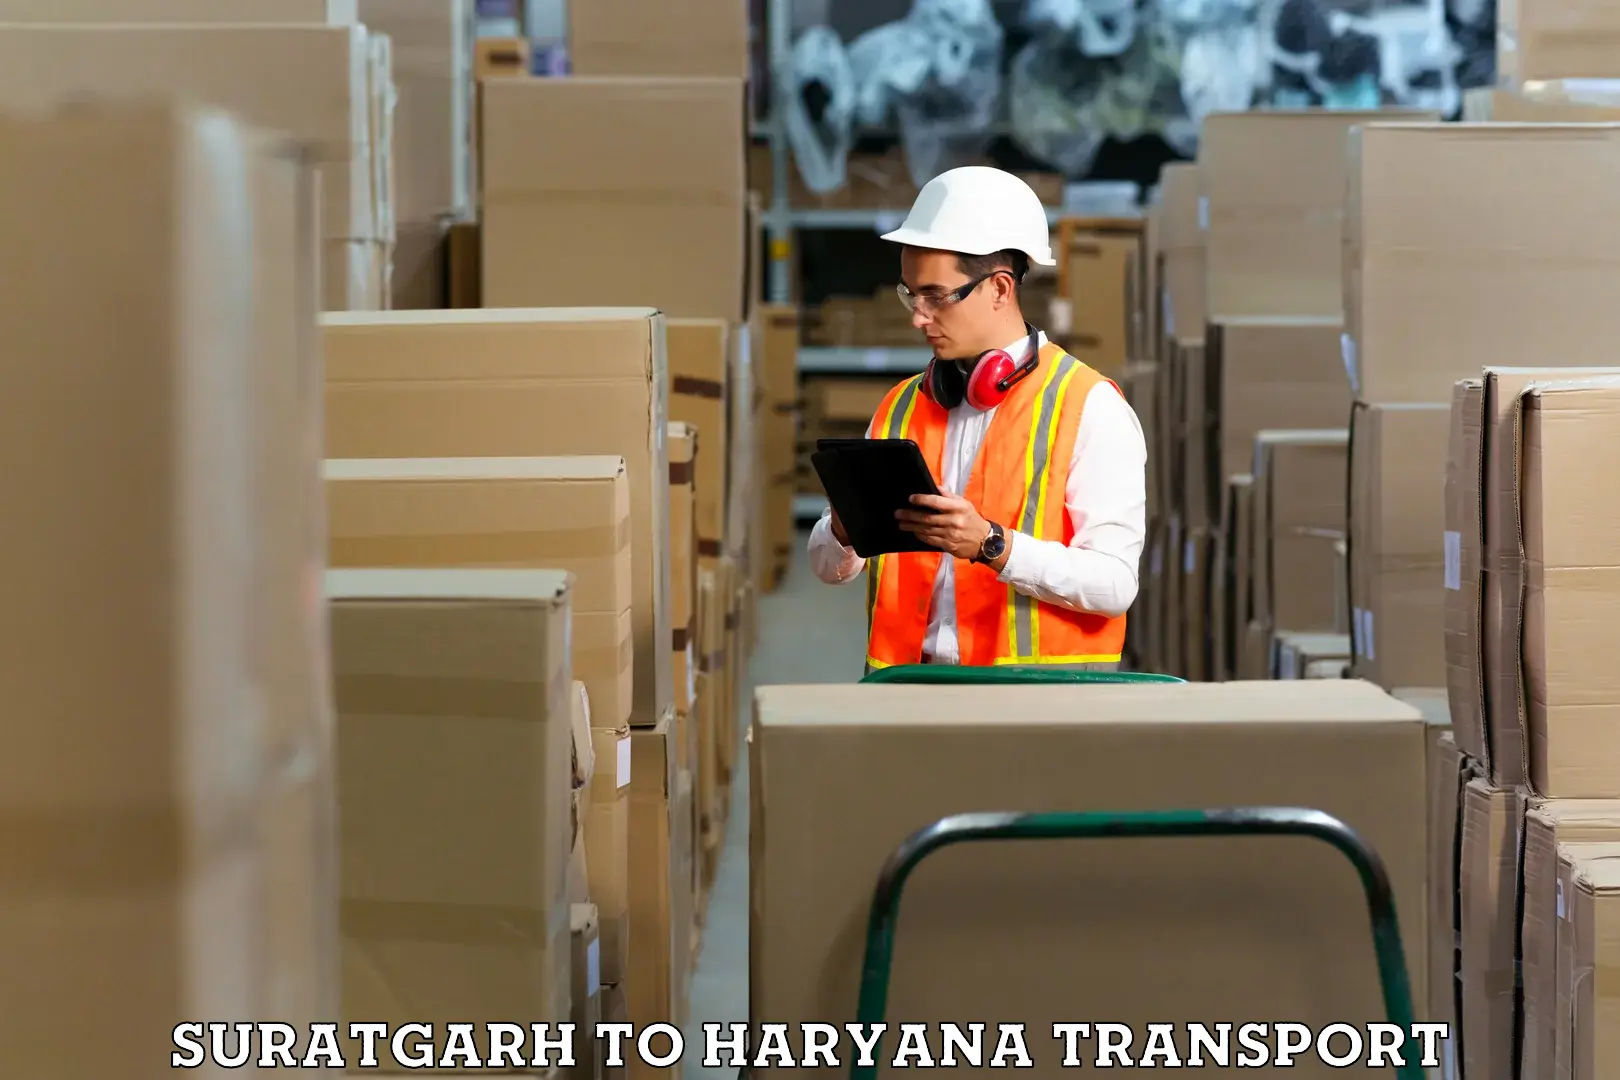 Bike shipping service Suratgarh to Haryana